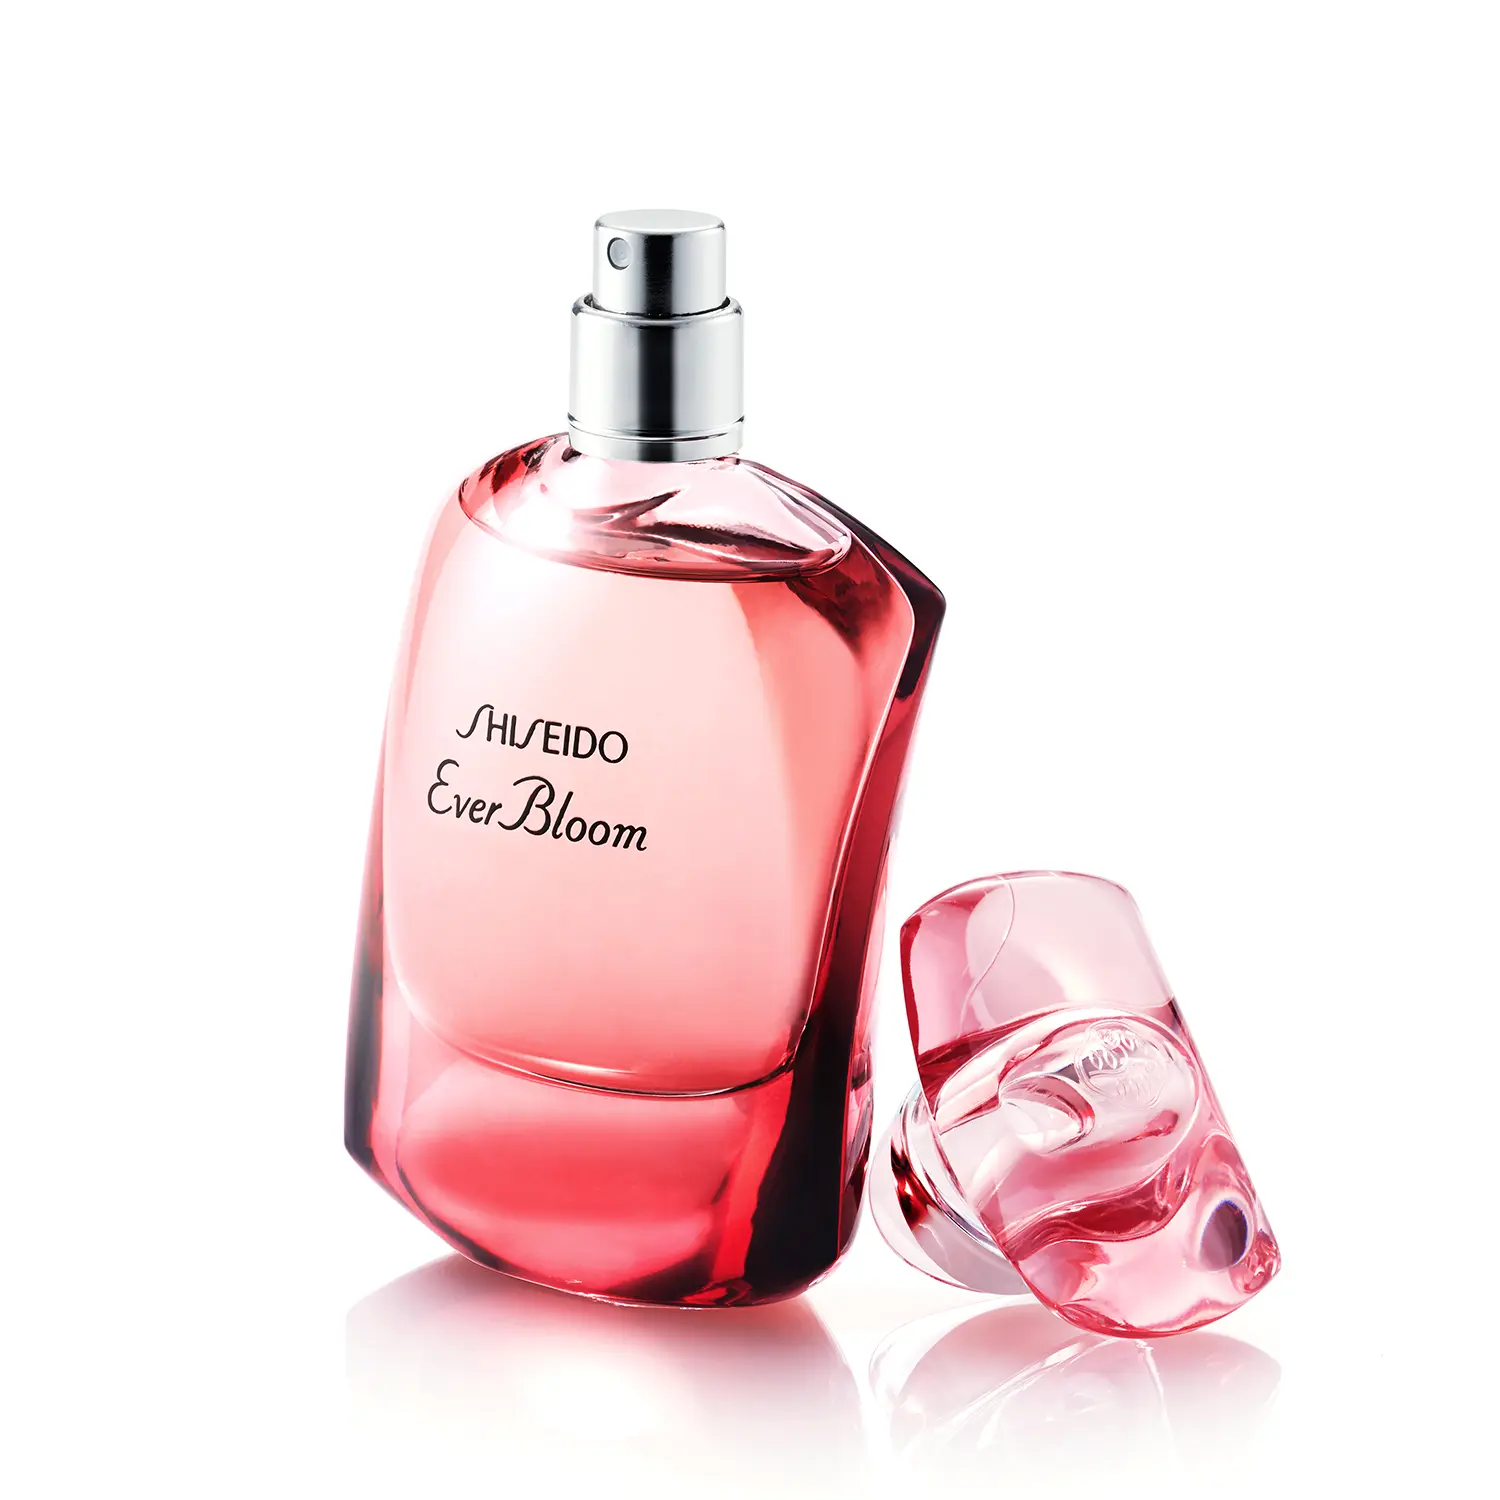 資生堂公式 Shiseido エバーブル ム ギンザフラワー オードパルファム 30mlの商品情報 コスメの通販 ワタシプラス